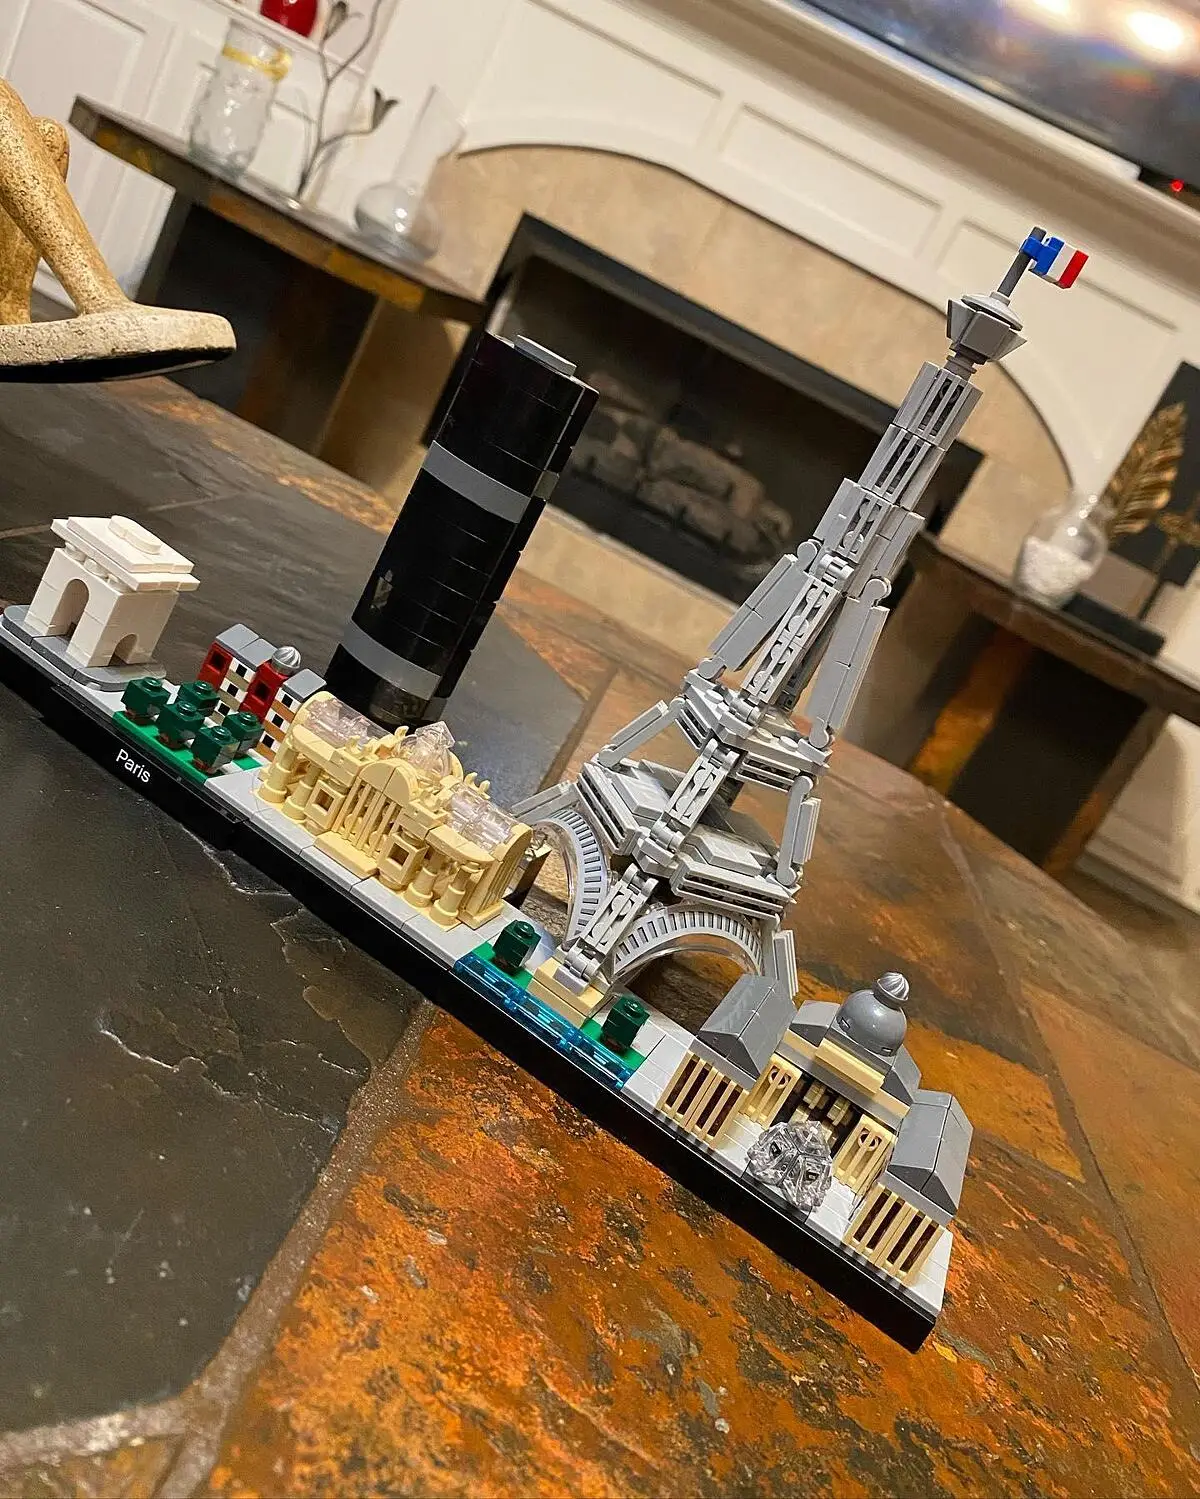 LEGO® 21044 Architecture Paris Maquette à Construire avec Tour Eiffel,  Collection Skyline, Décoration Maison, Idée de Cadeau - Cdiscount Jeux -  Jouets